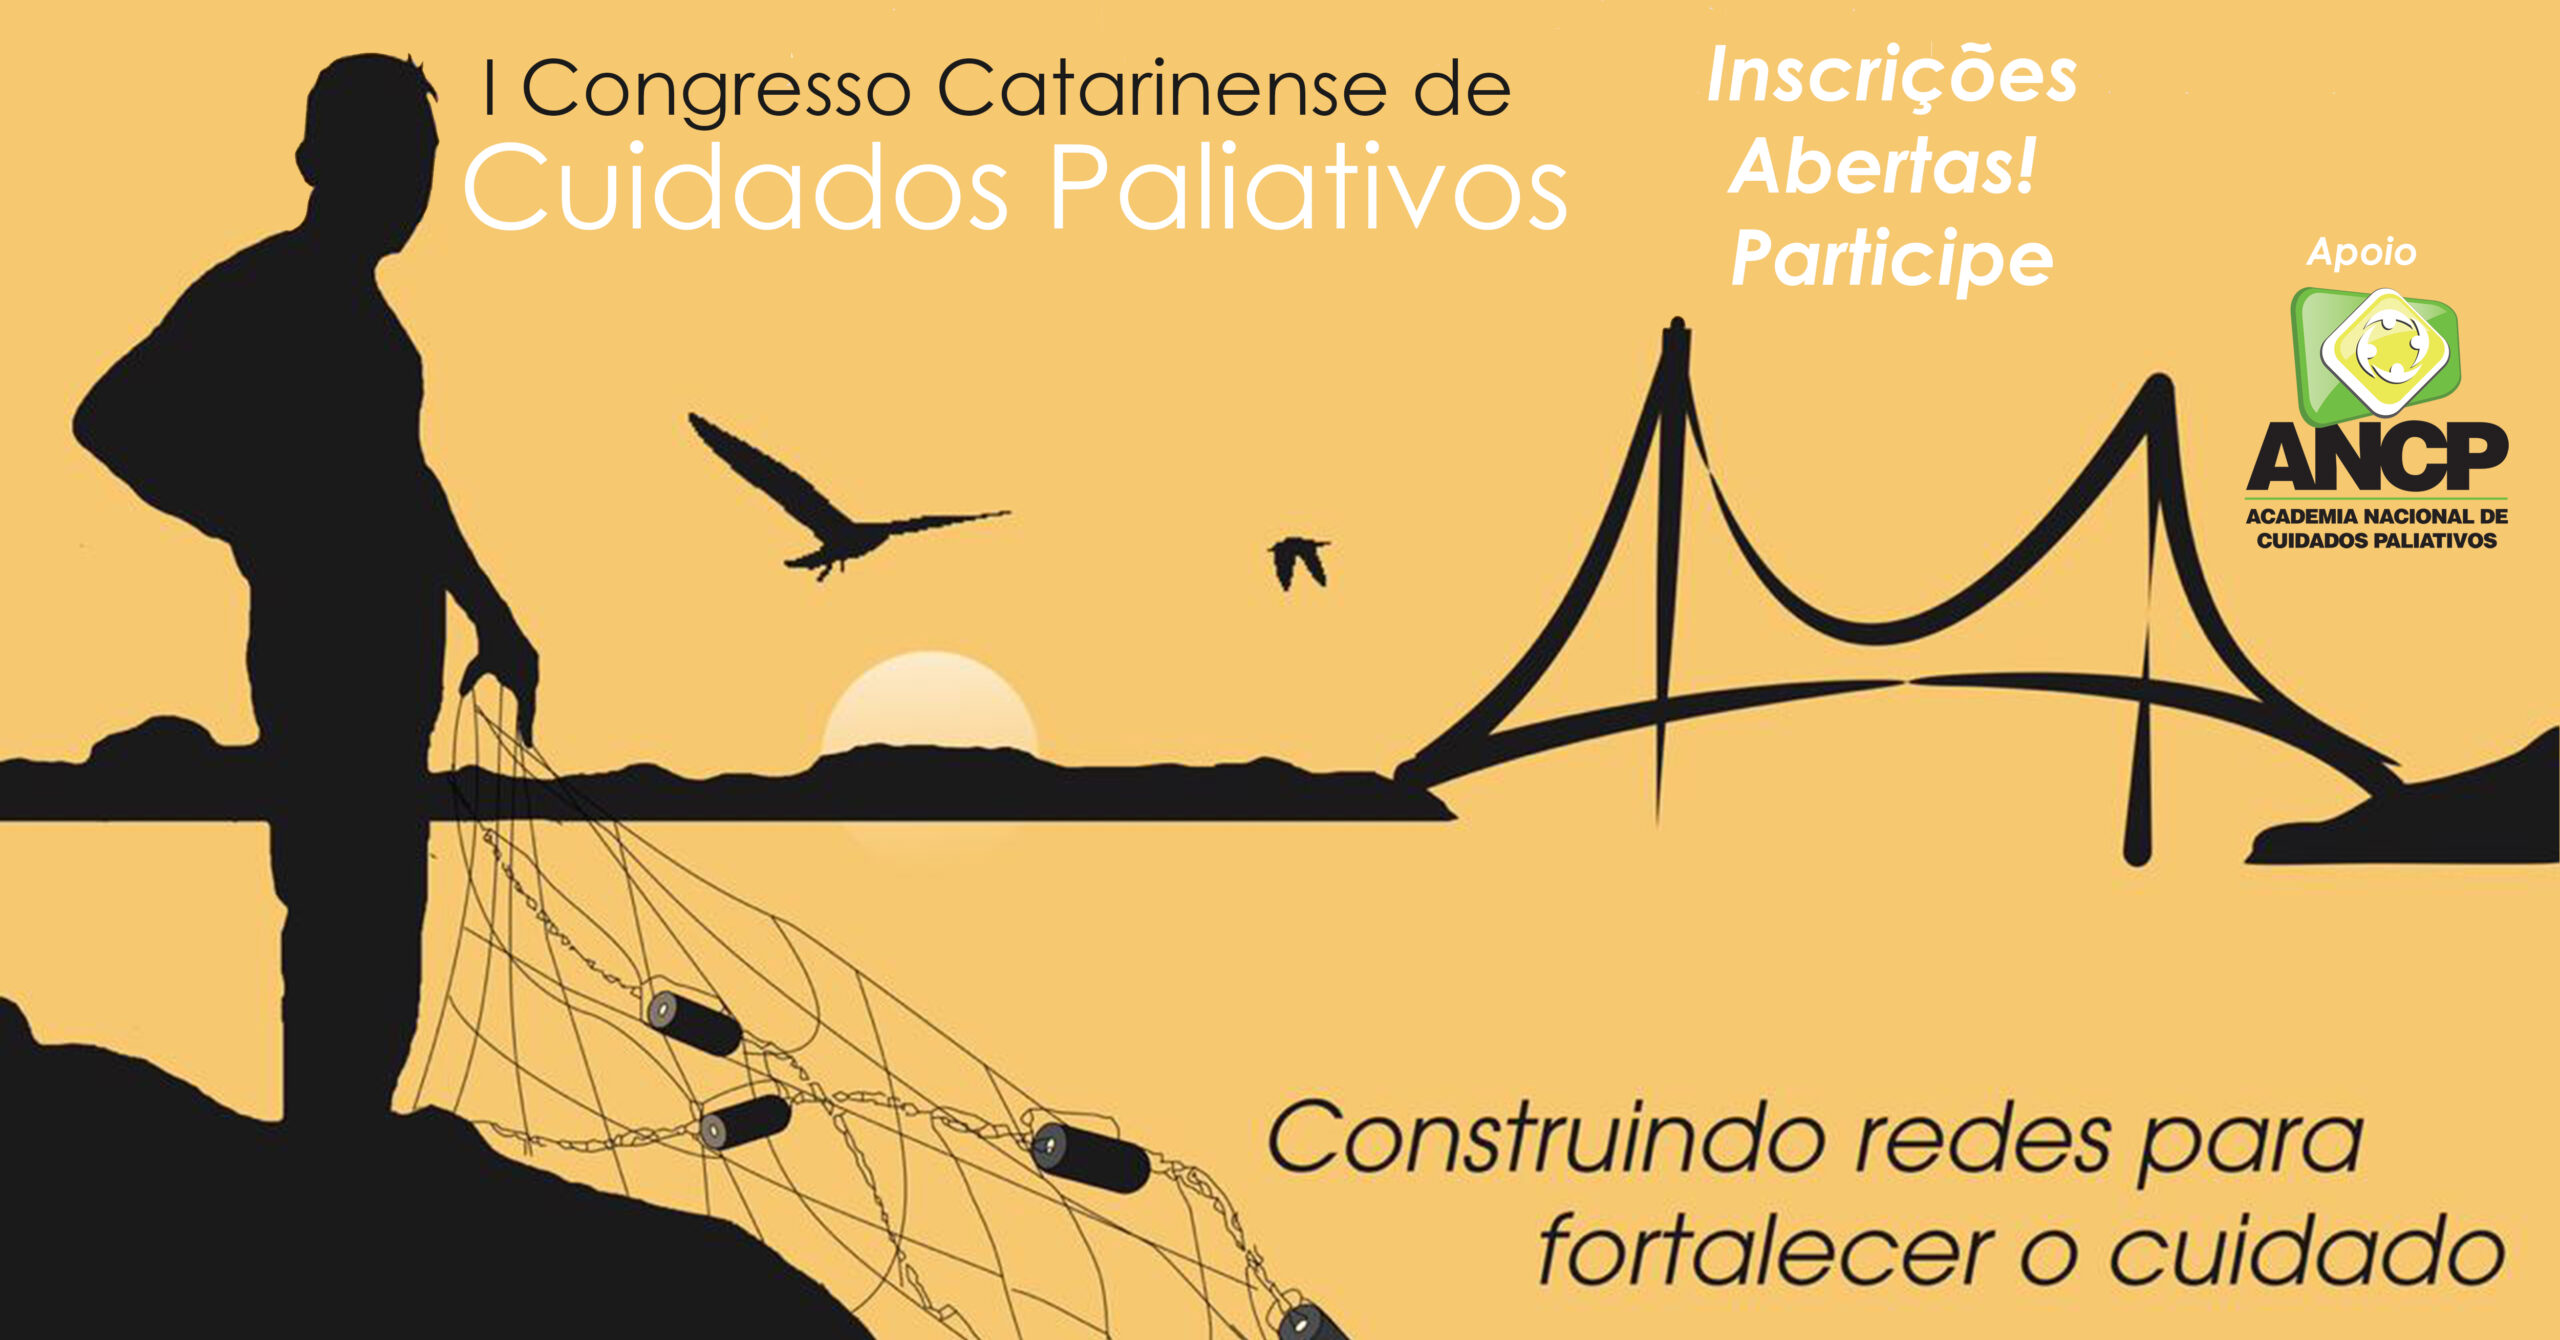 I Congresso Catarinense de Cuidados Paliativos está com inscrições abertas